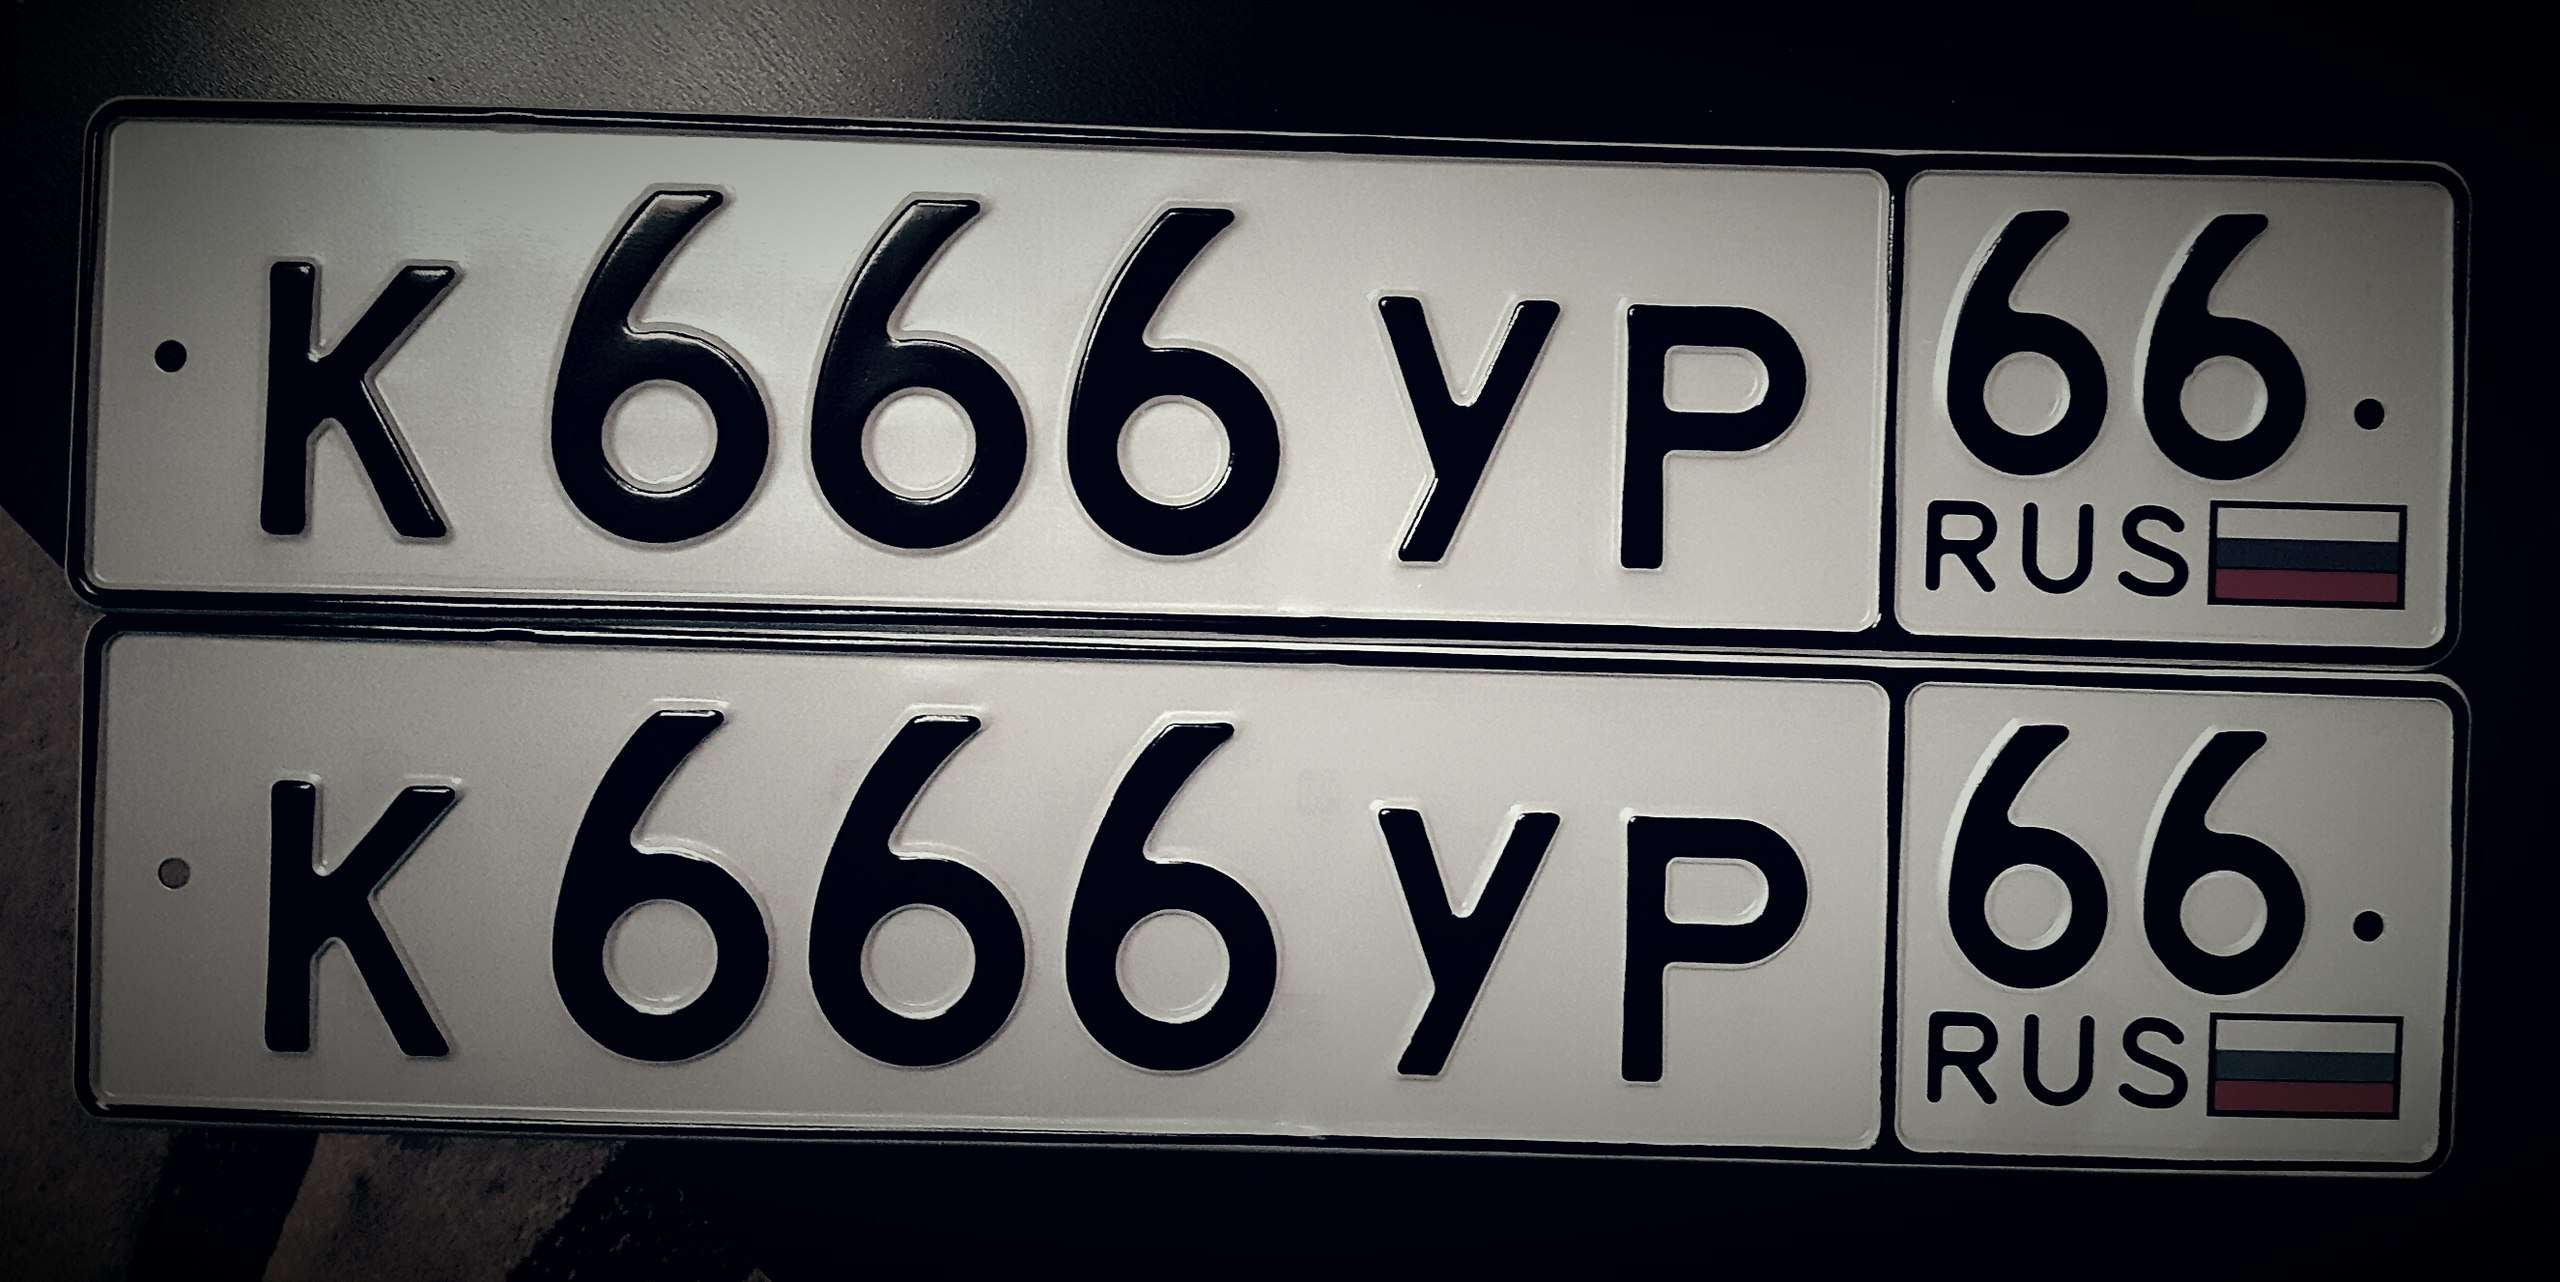 Номера машин в новосибирске. Номера машин. Государственный номерной знак. Автомобильный номерной знак. Номерной знак 666.